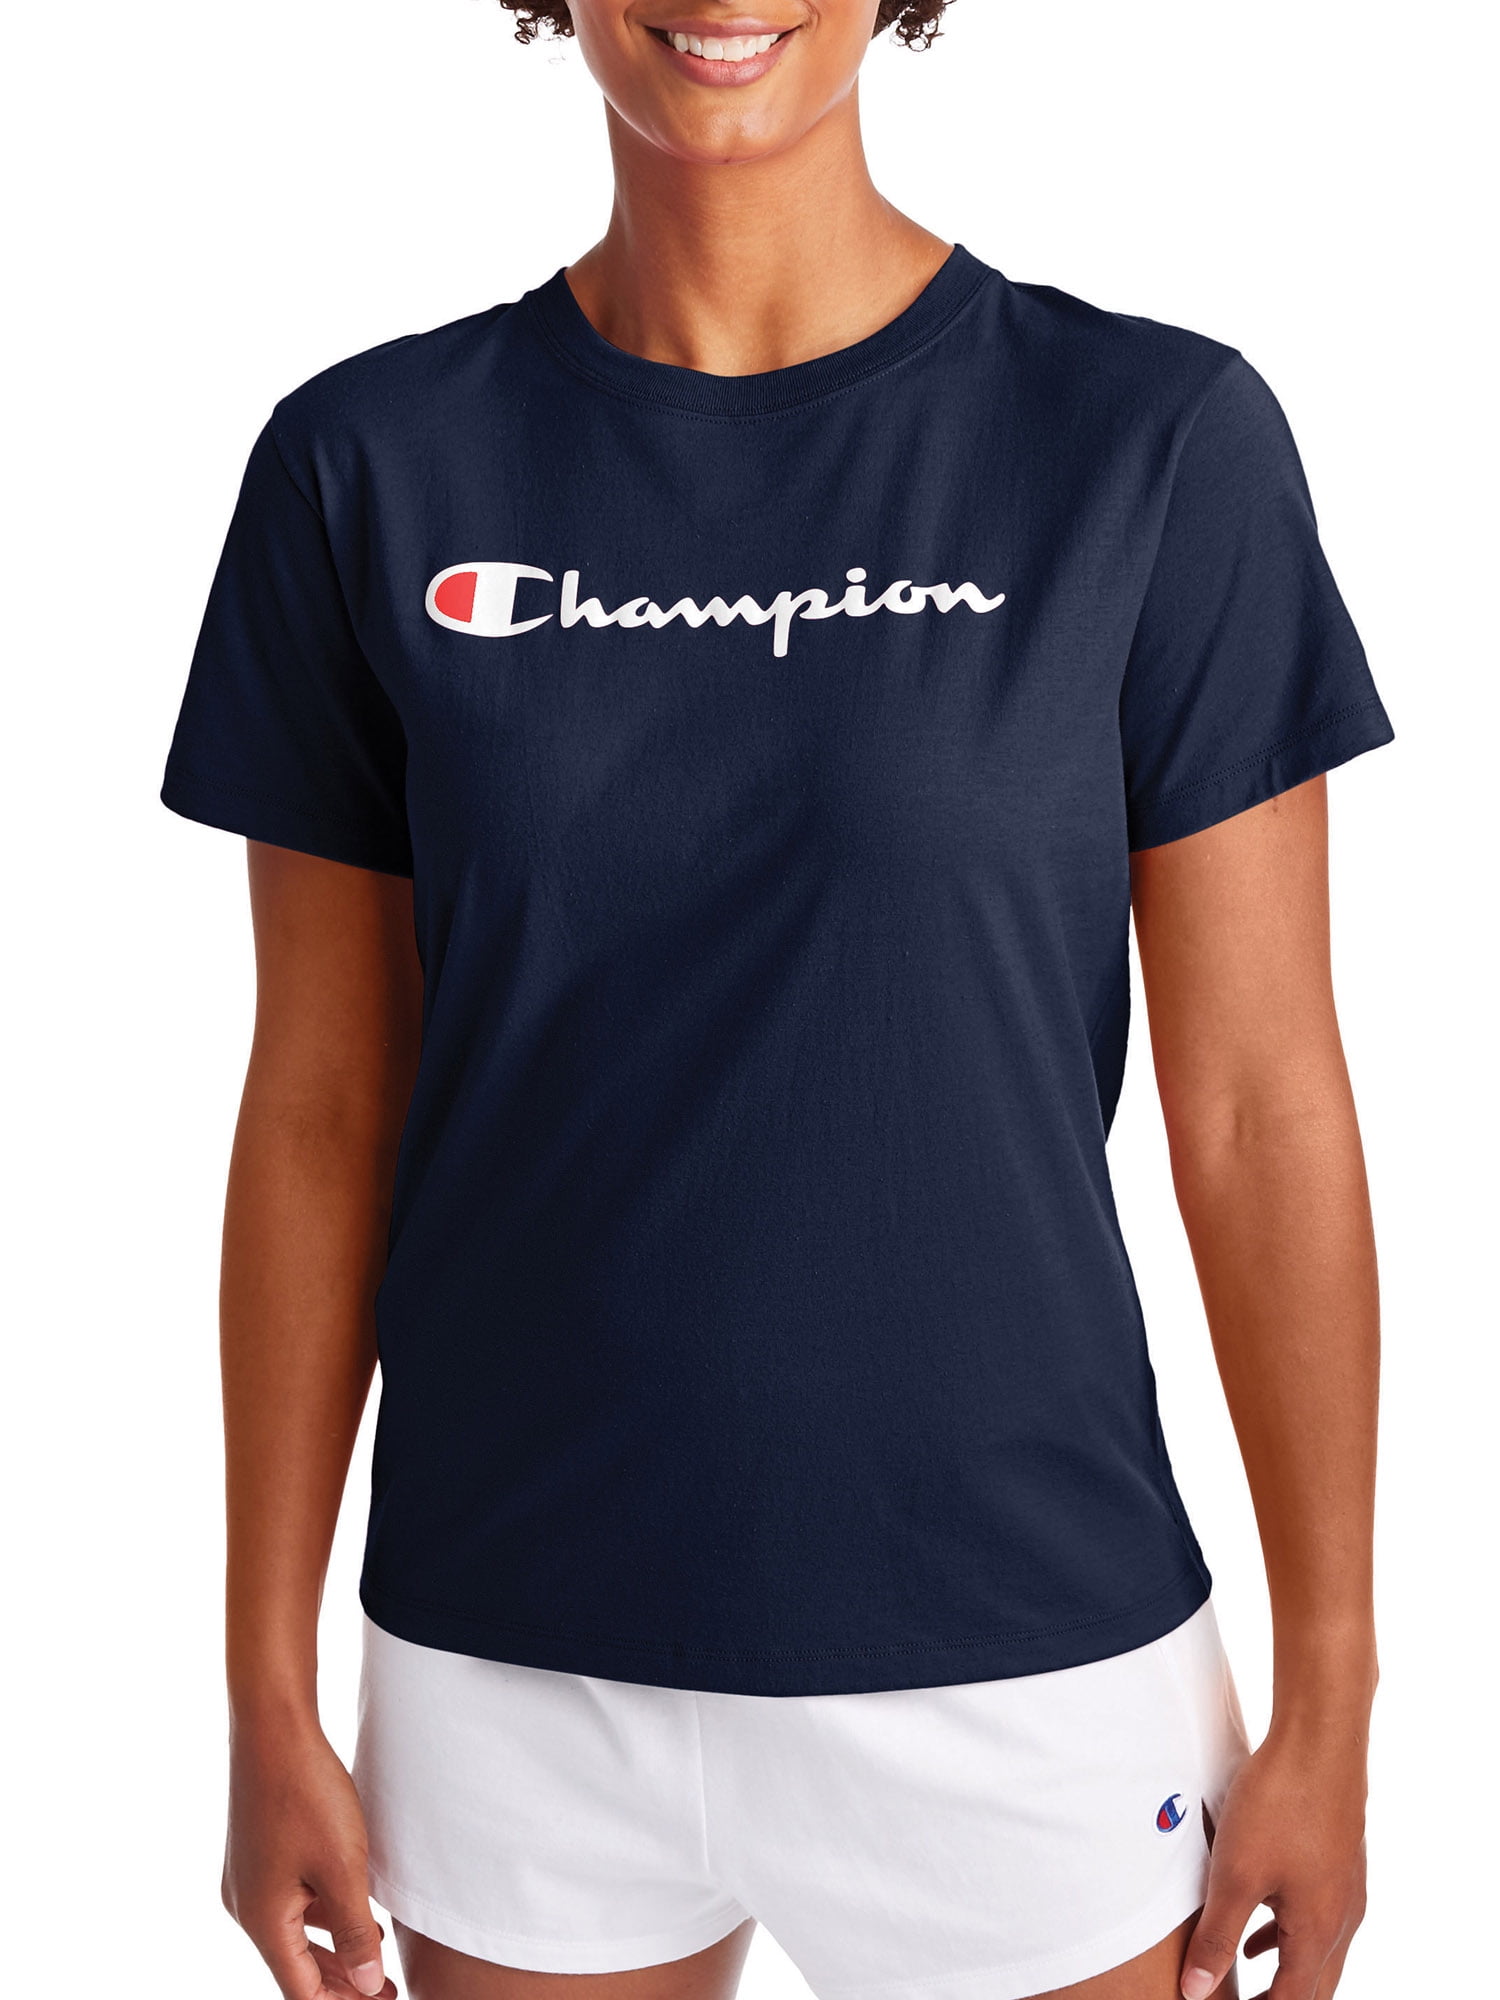 champion shirts walmart